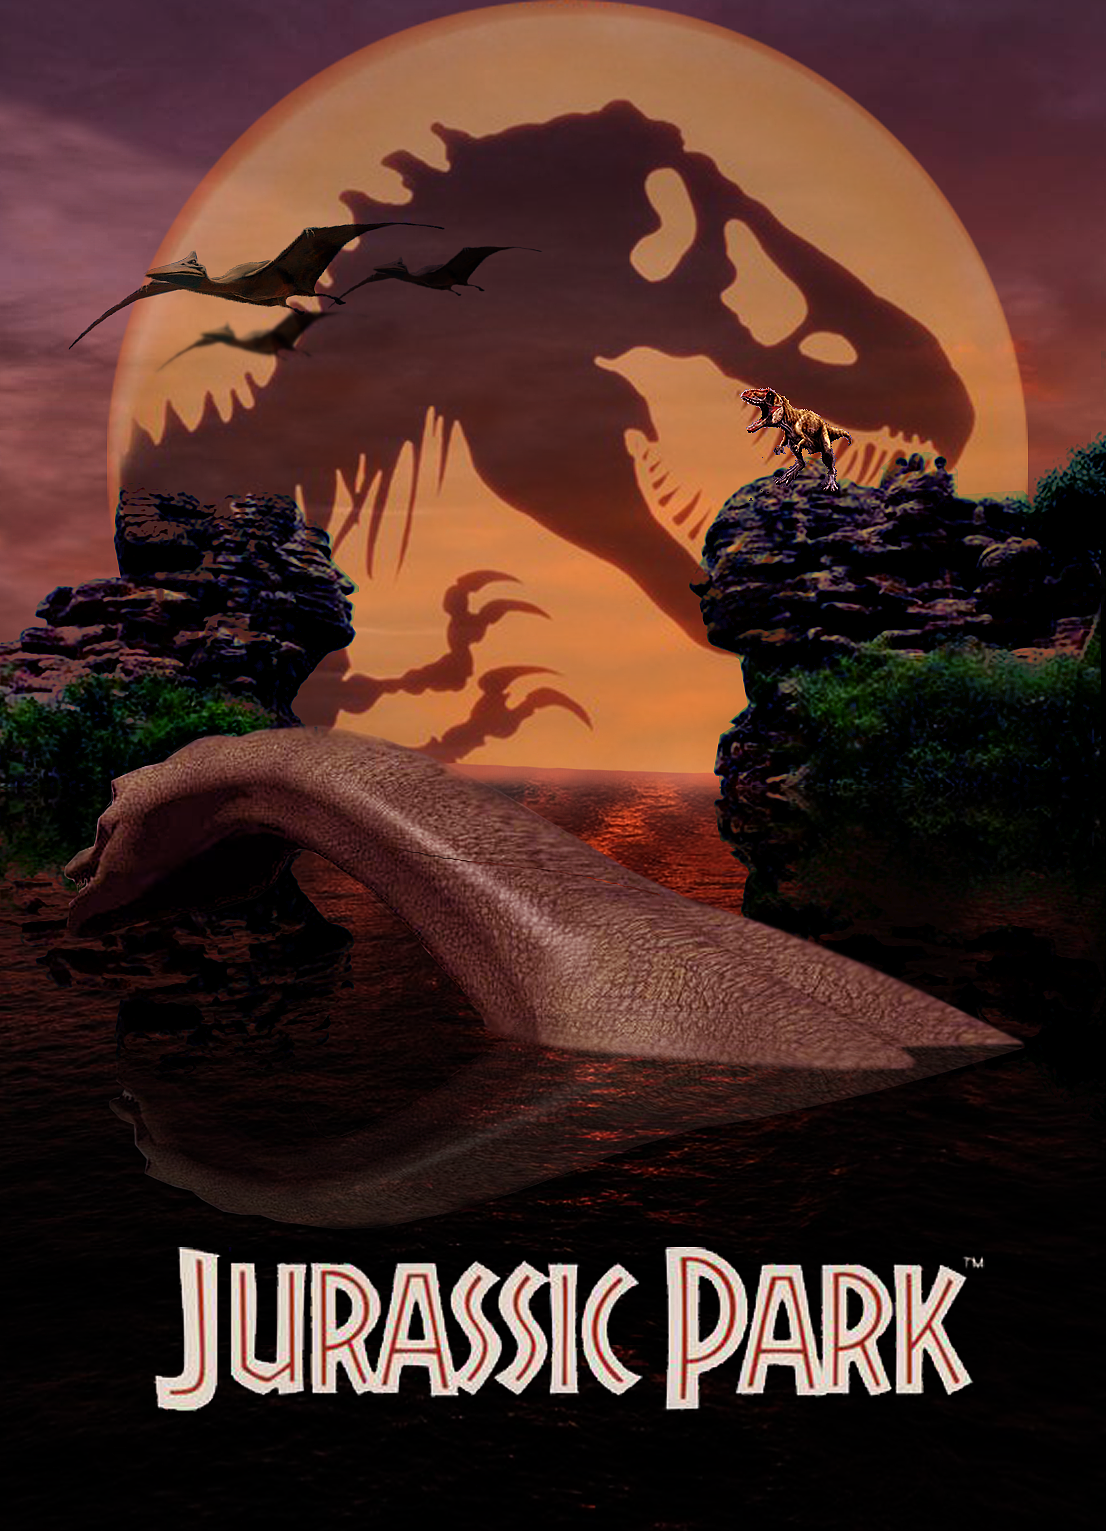 侏罗纪公园4 Jurassic.World.2015.720p.BluRay.x264-SPARKS 5.45G-HDSay高清乐园